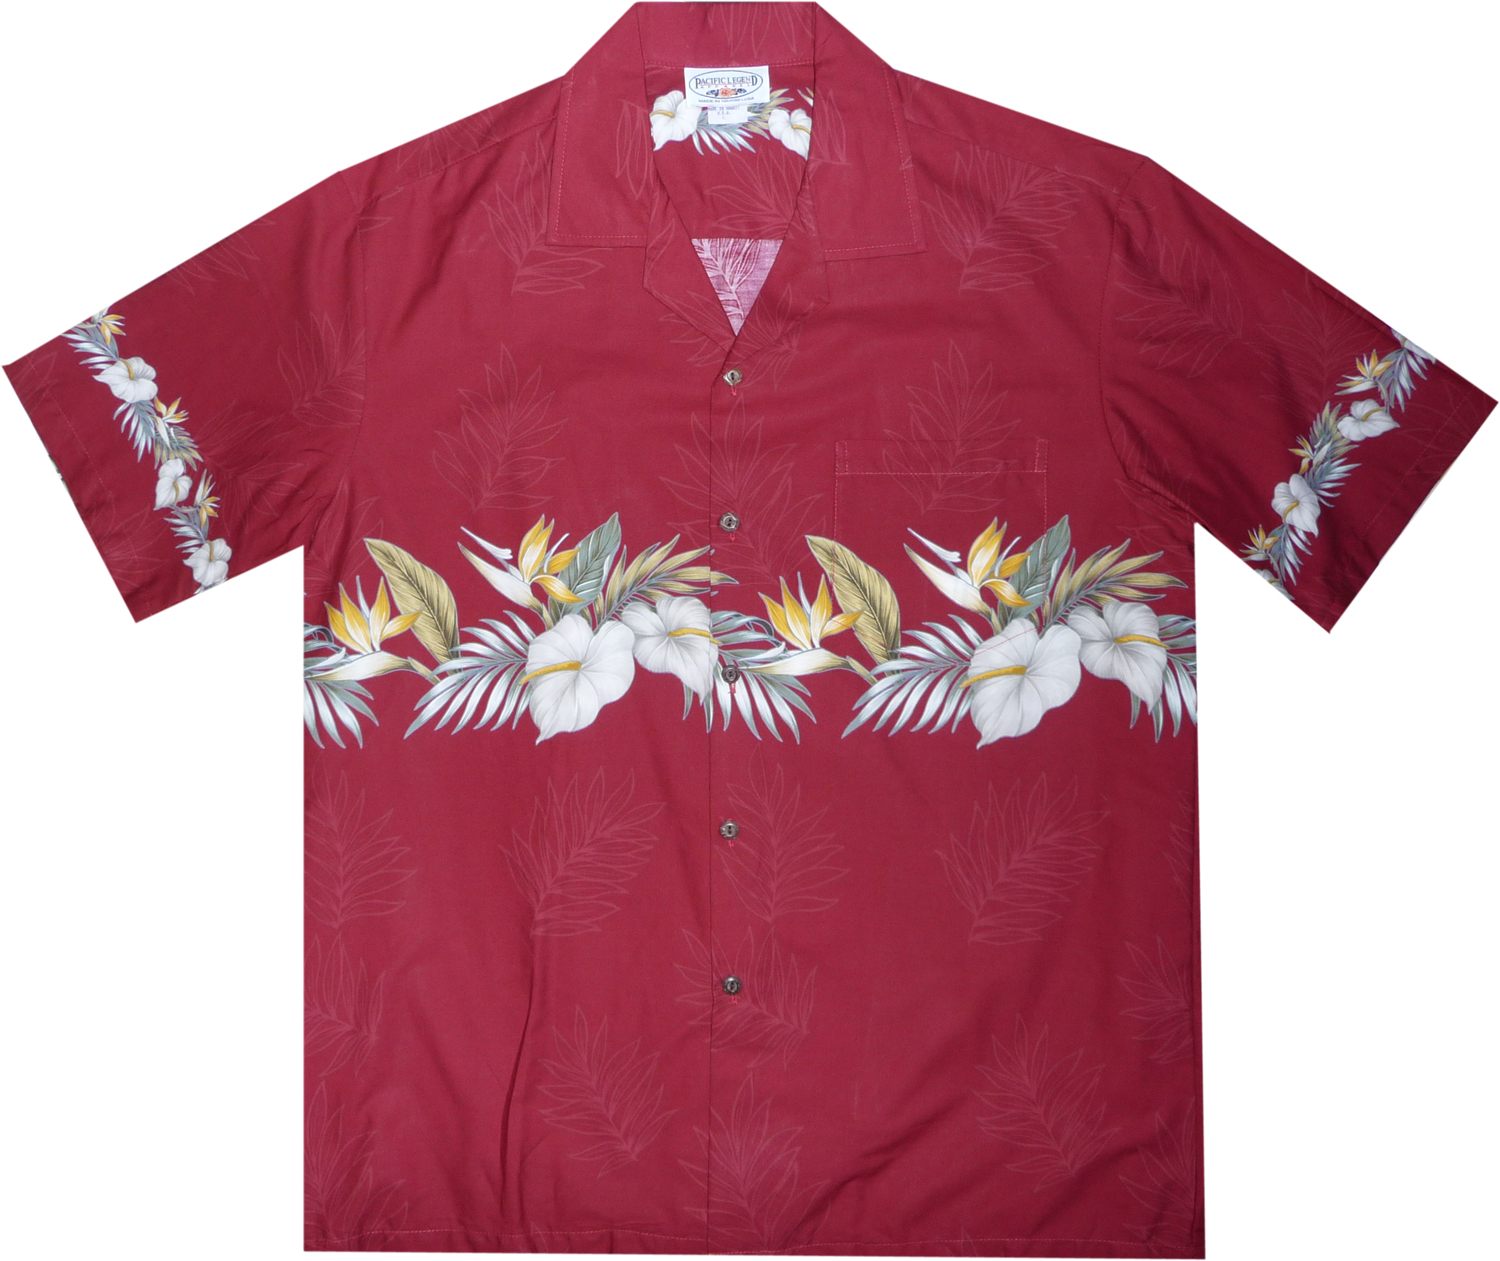 New Bird of Paradise Men's Aloha Shirt, Made in Hawaii Pink / 5XL